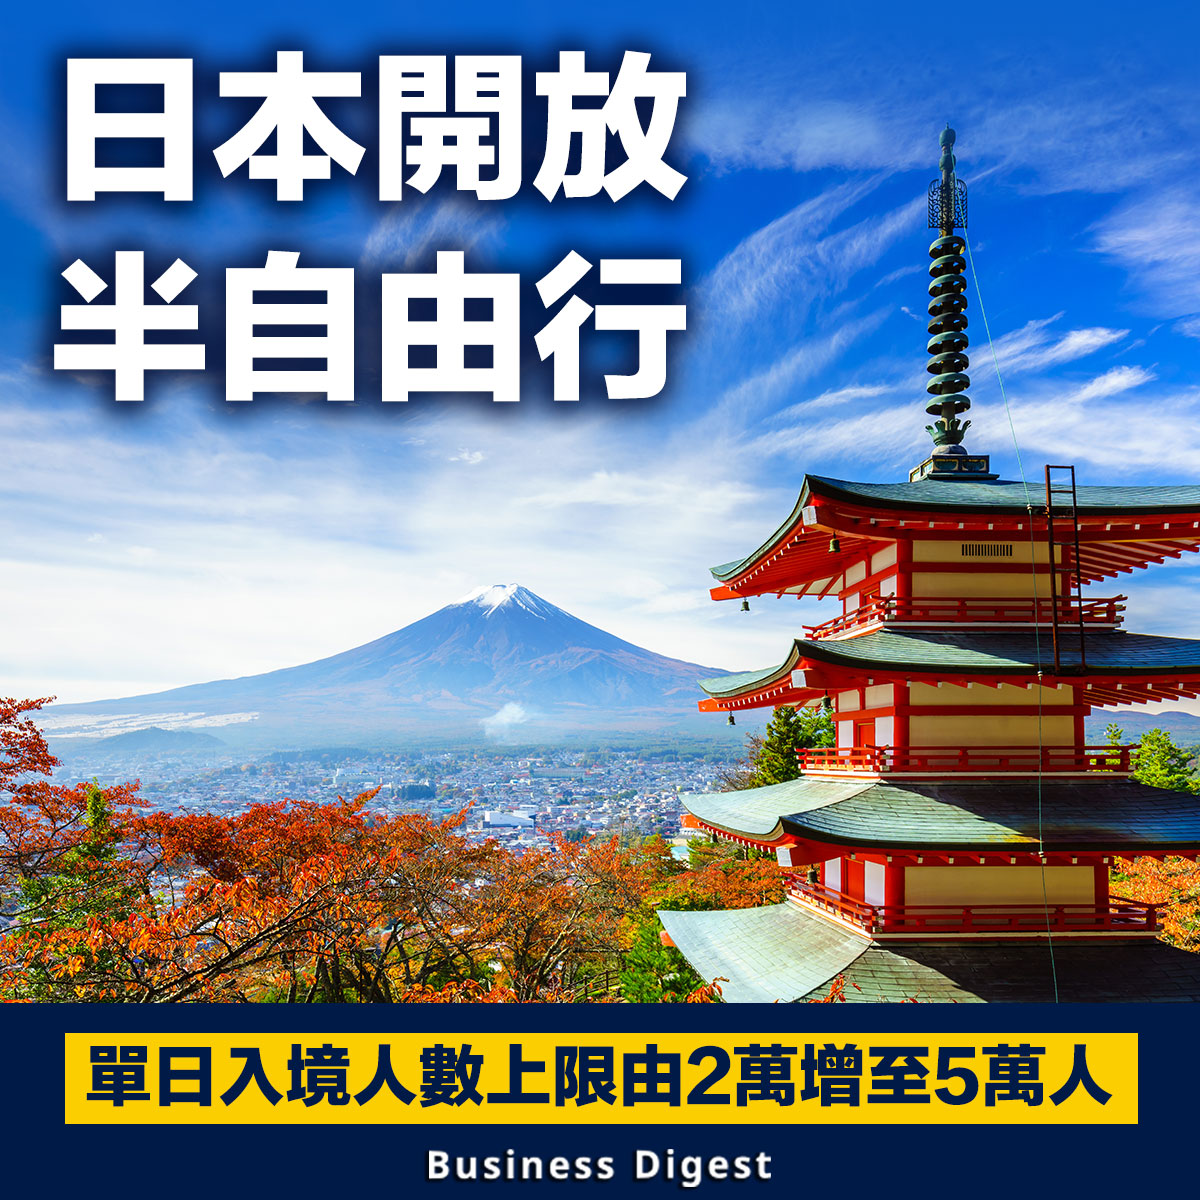 【日本旅行】日本開放半自由行，單日入境人數上限由2萬增至5萬人